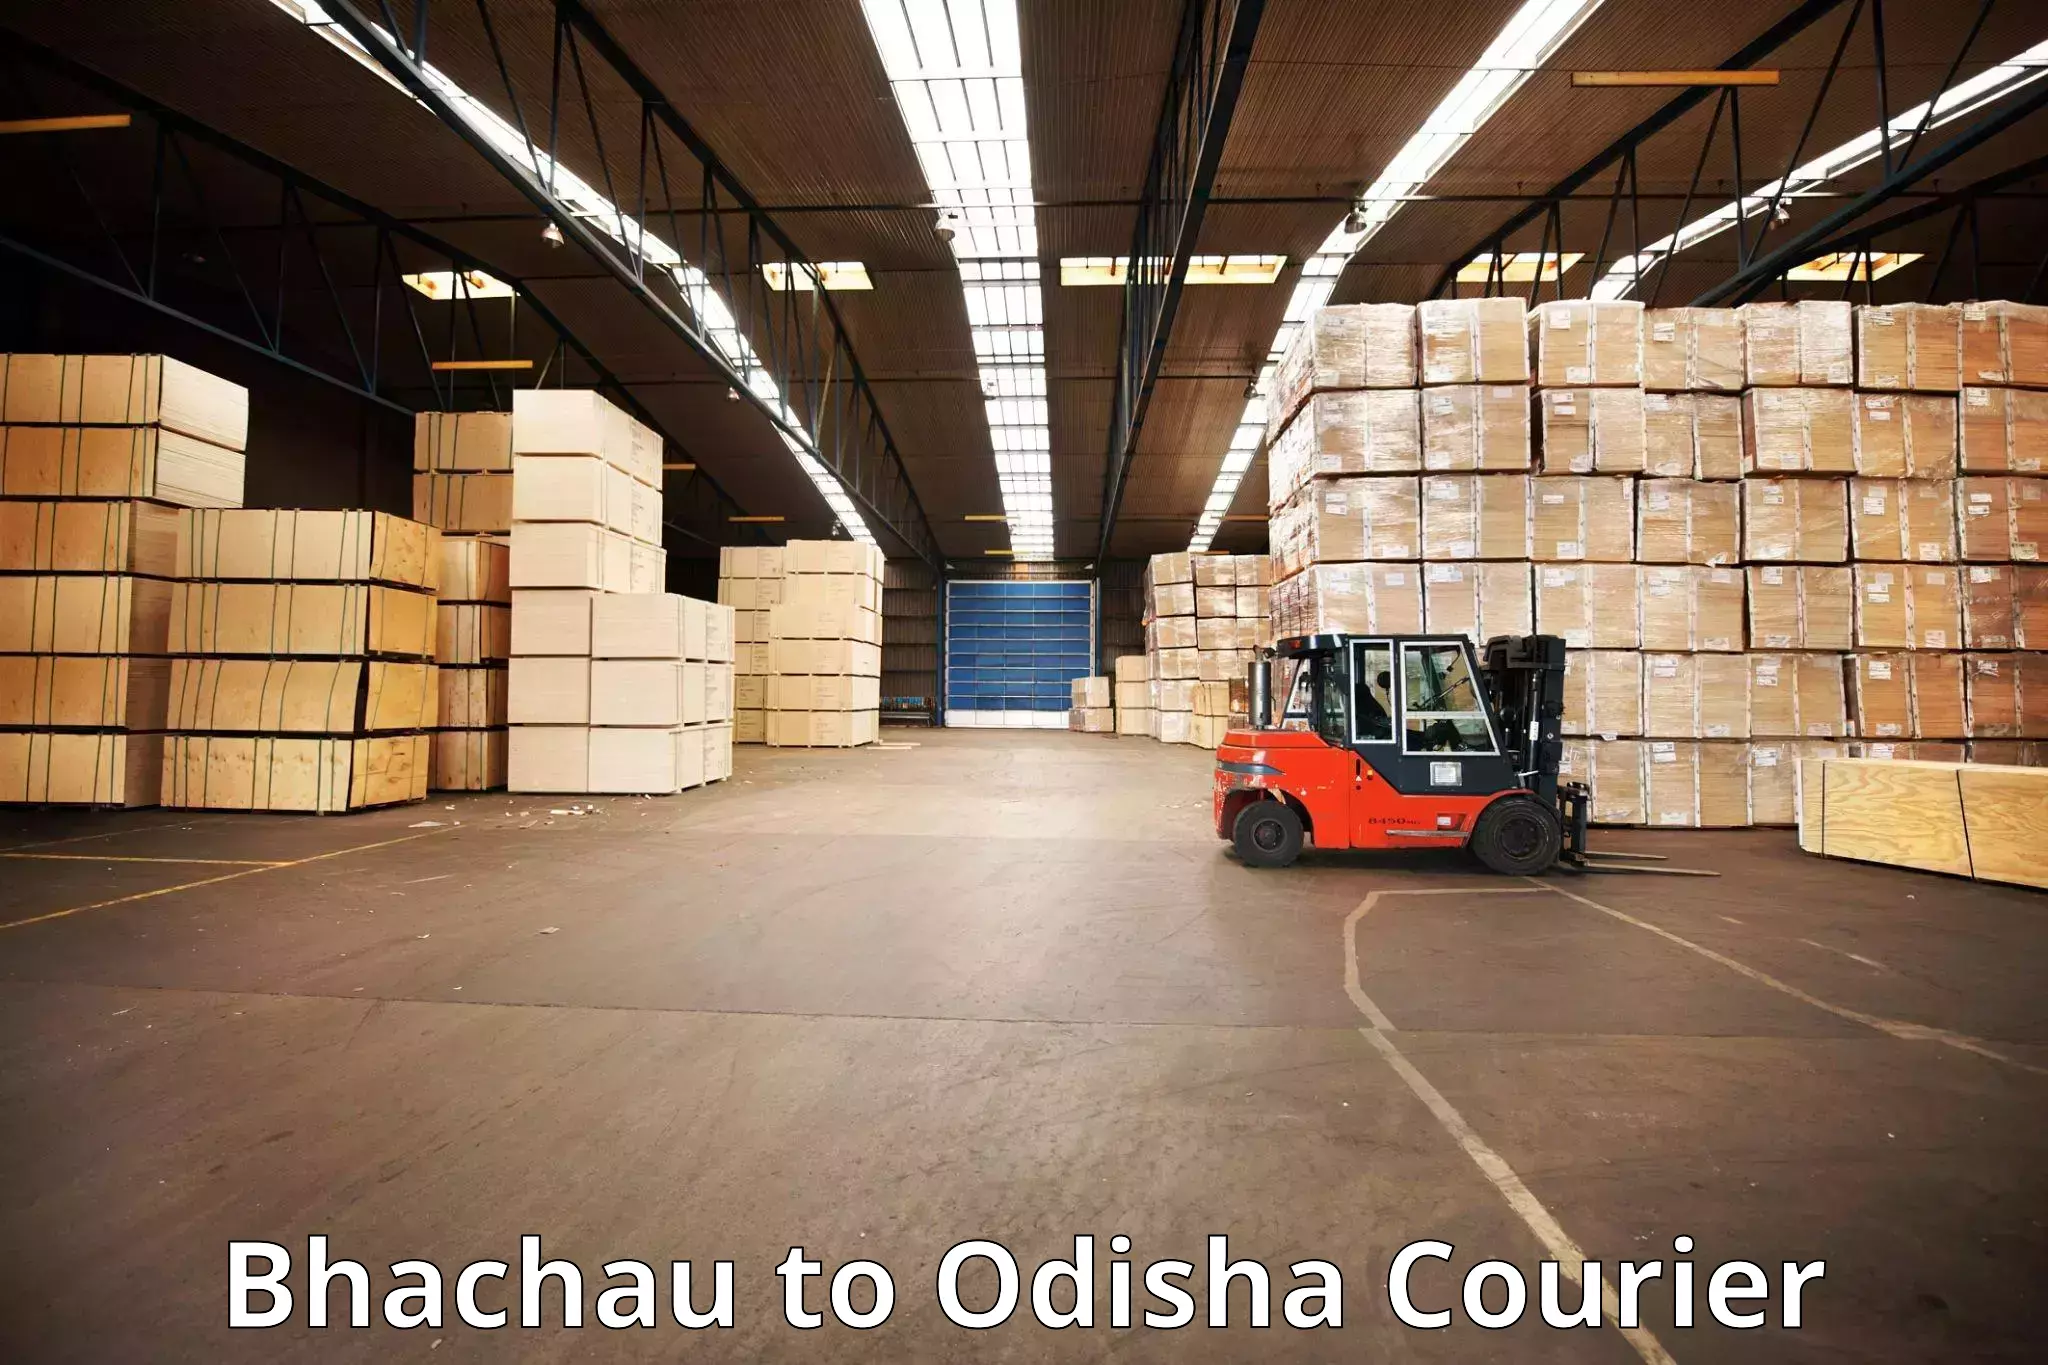 Luggage shipment tracking Bhachau to Chandbali